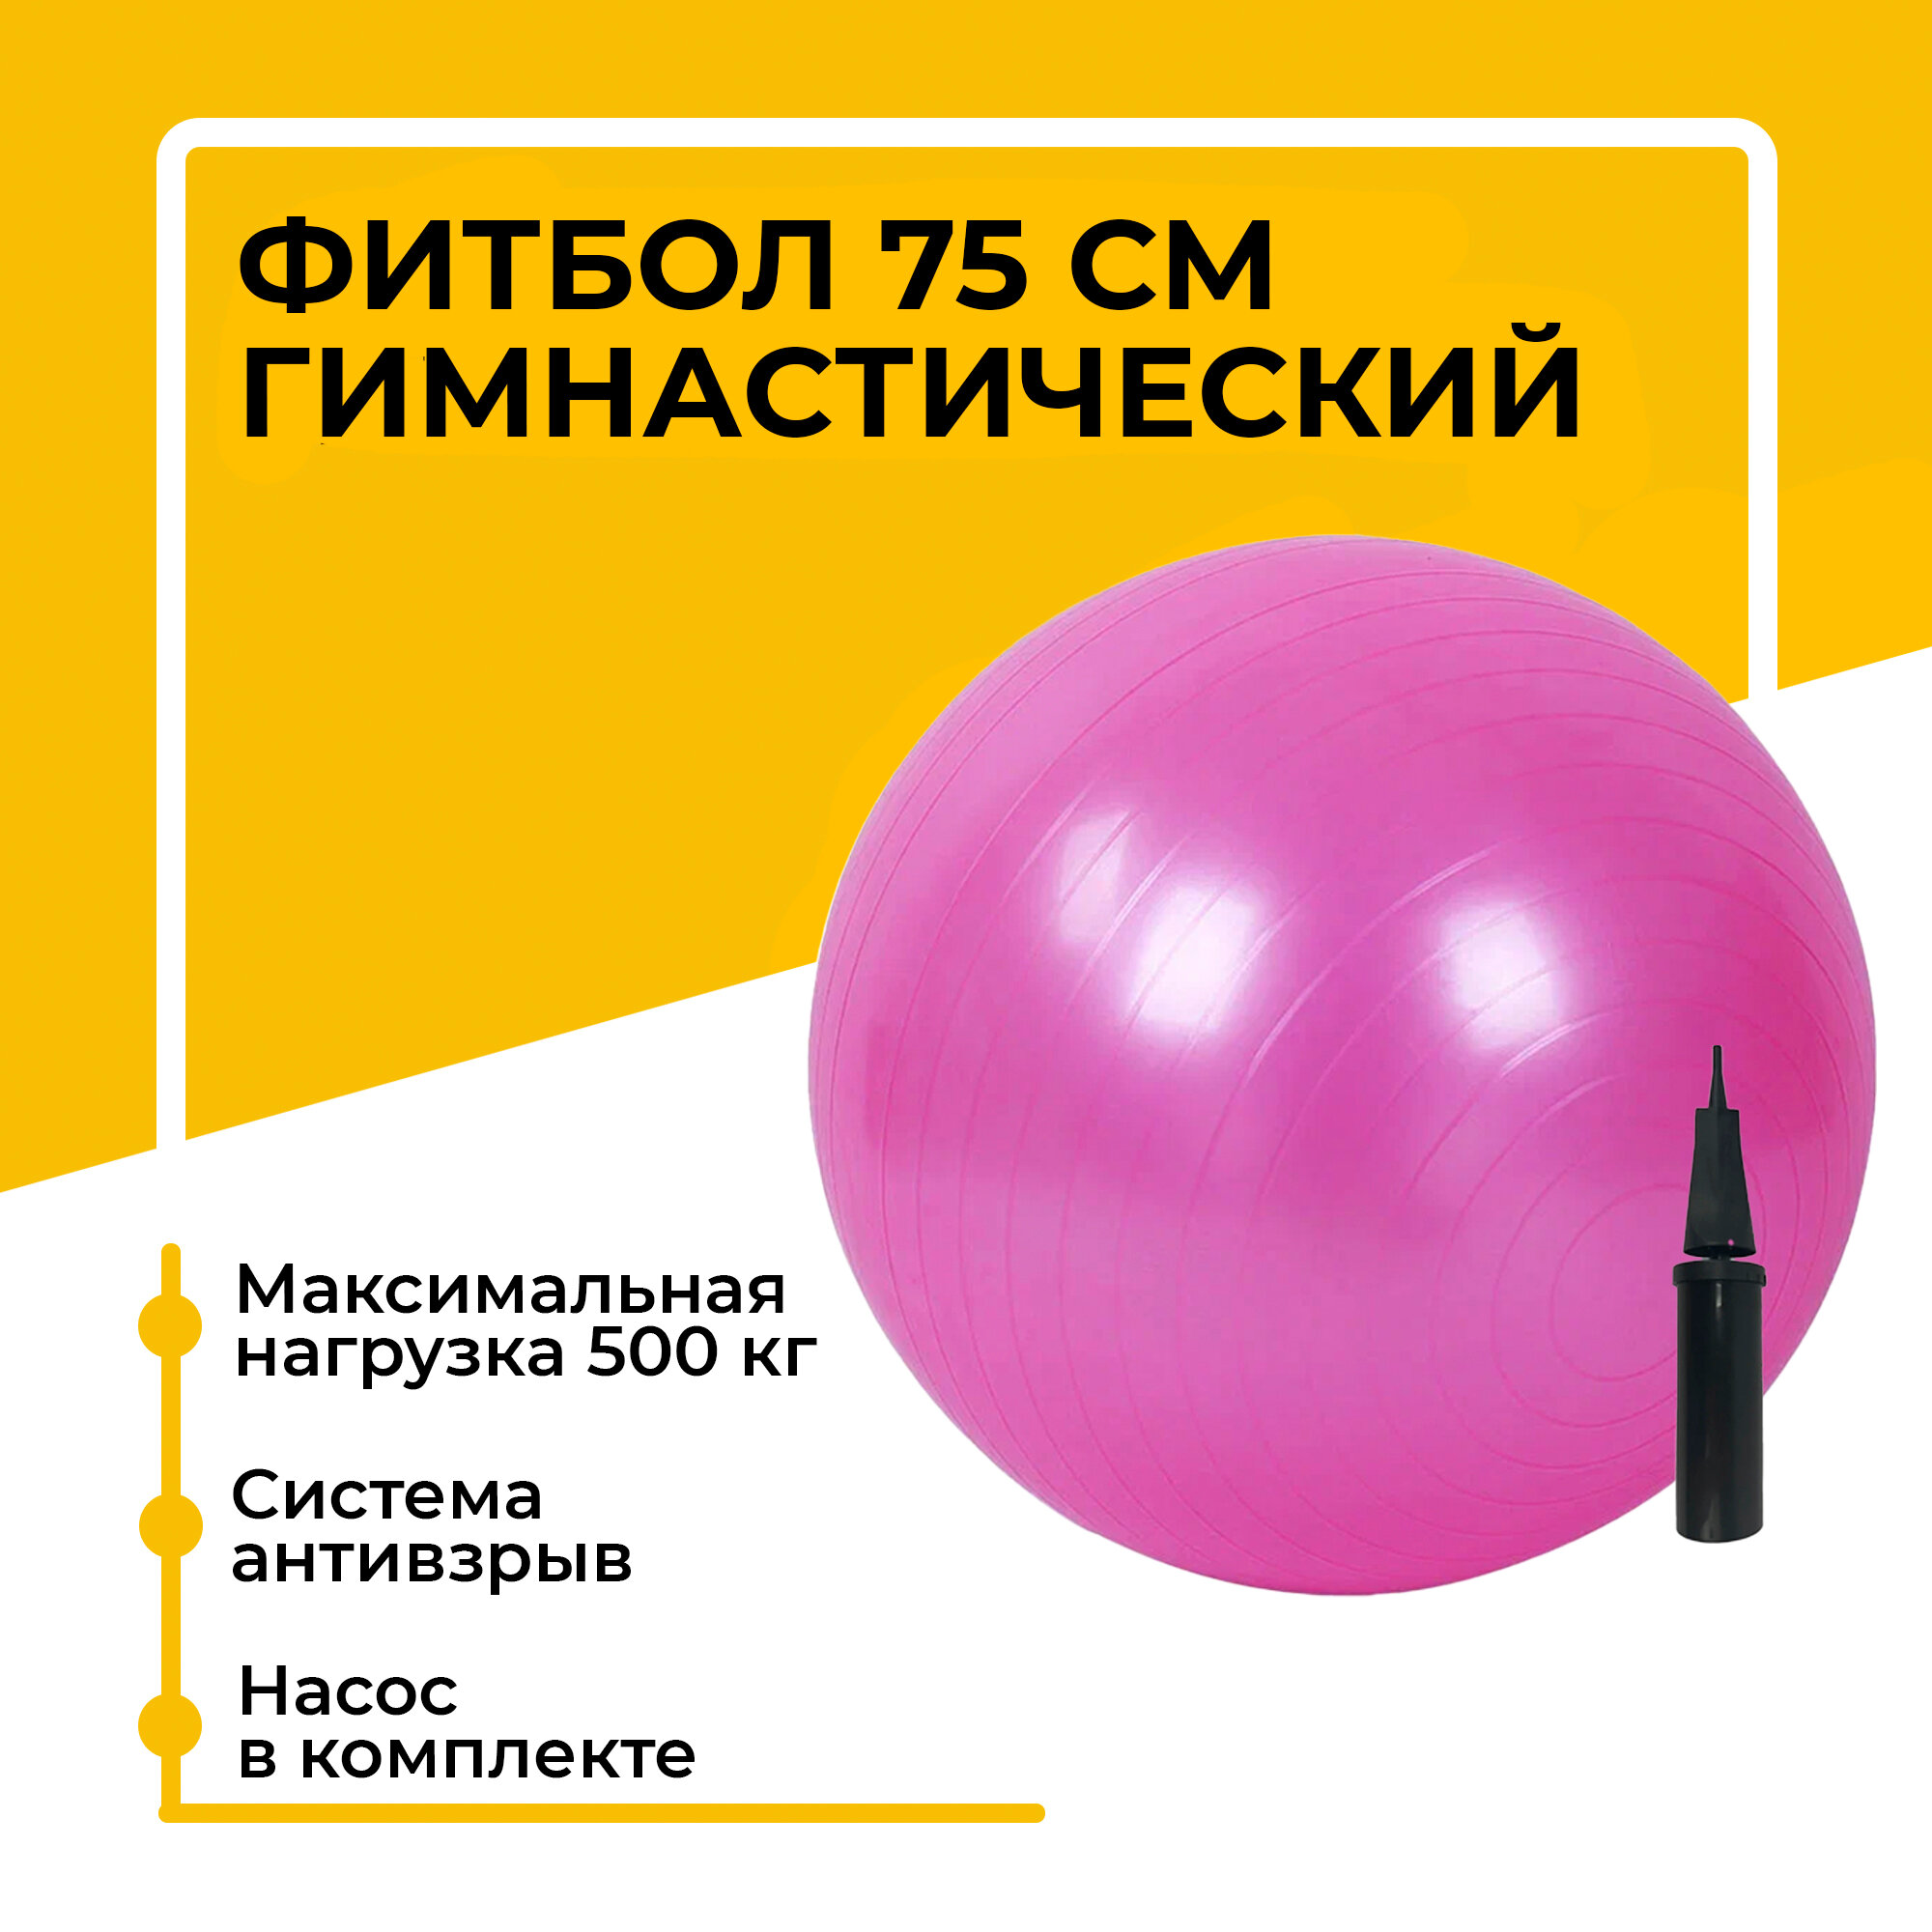 Фитбол, гимнастический мяч для занятий спортом, розовый, 75 см